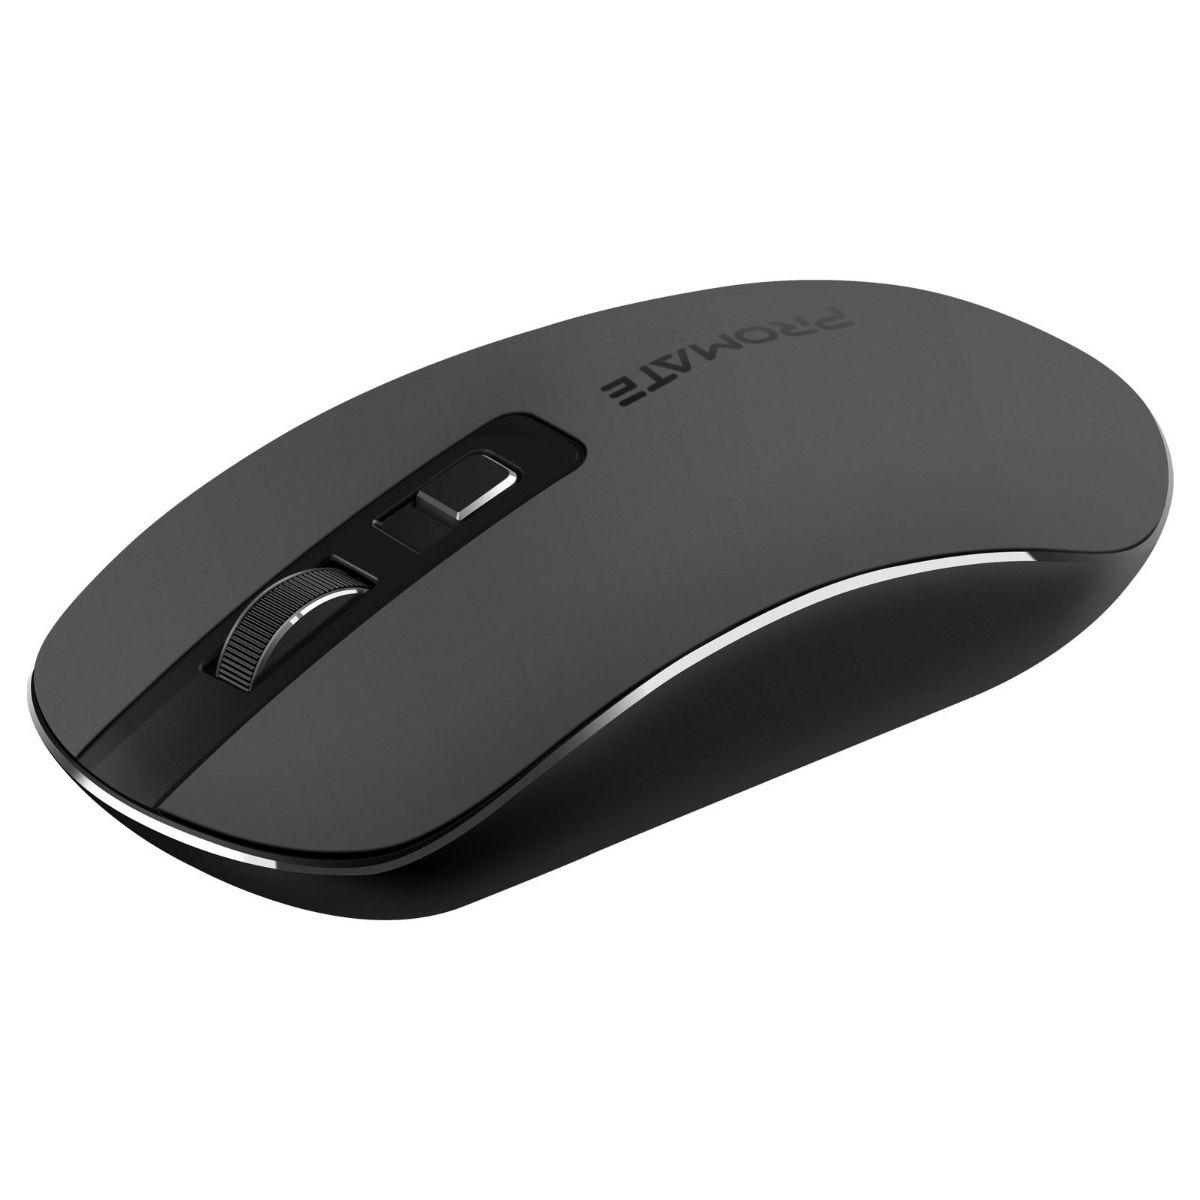 Mouse ergonomic Promate Suave Black, 1600 dpi, negru